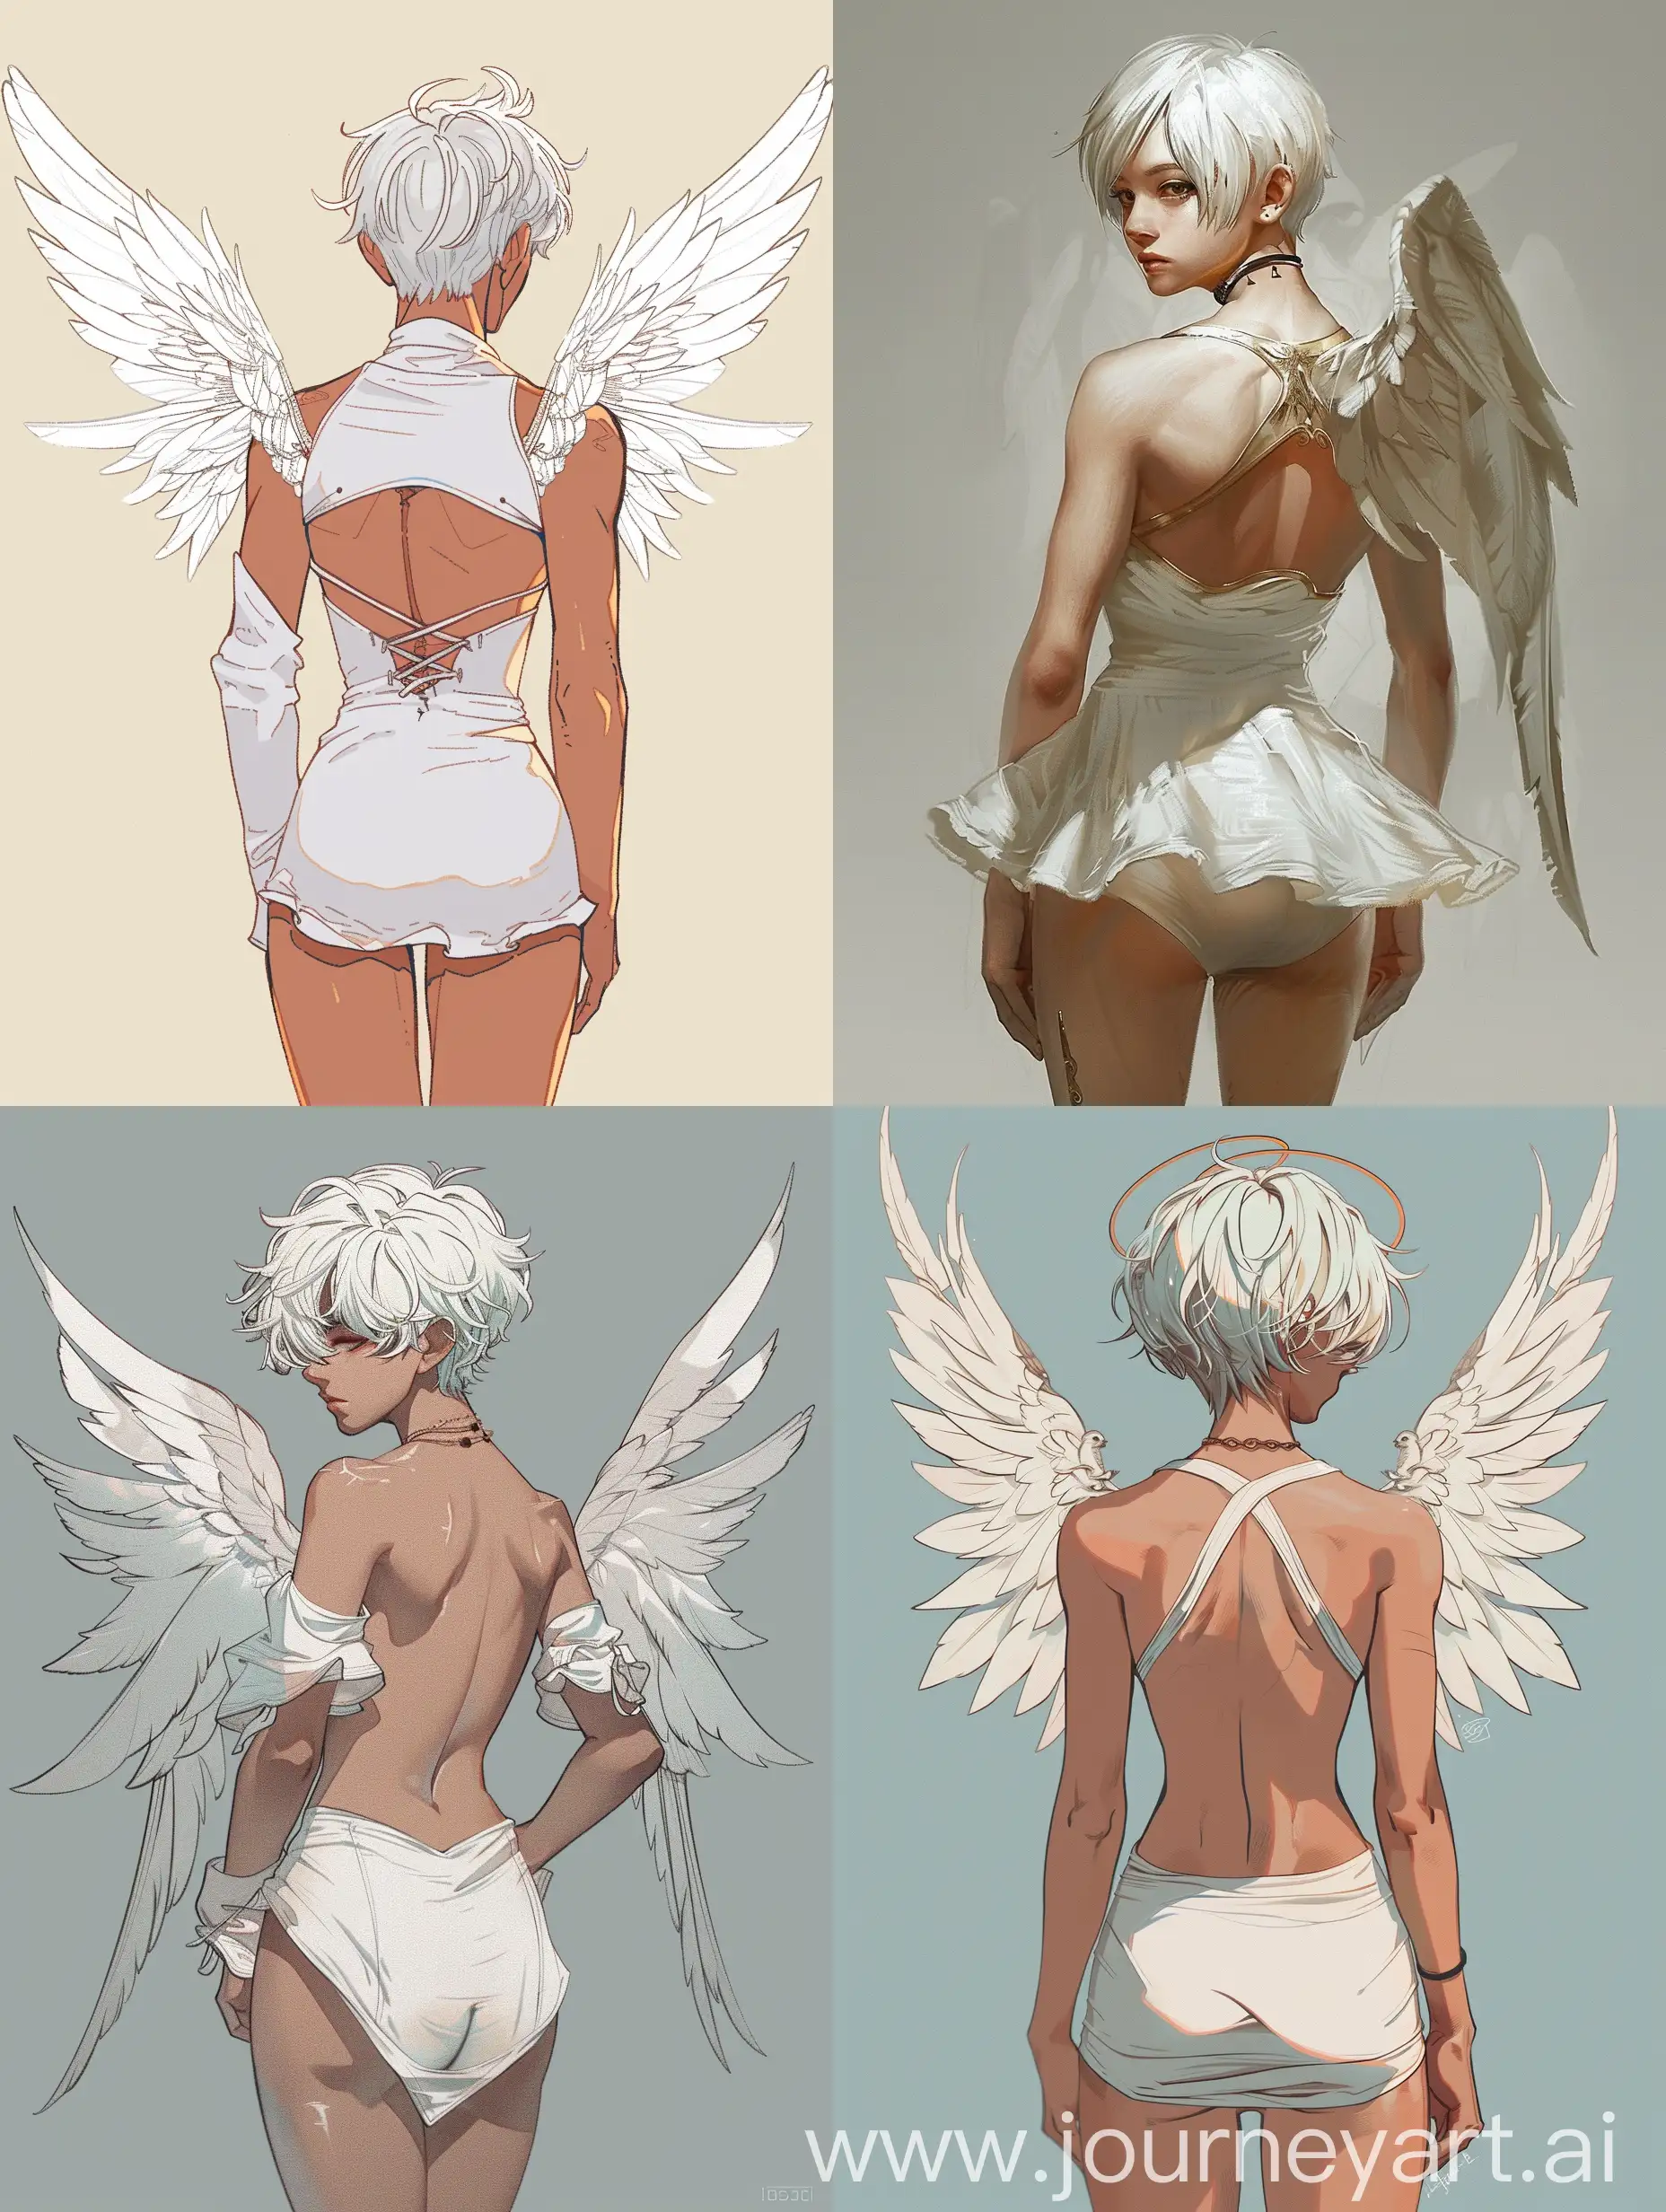 Женственный парень, короткие белые волосы, за спиной ангельские крылья, белое обтягивающее платье, большие бедра, стоит спиной вперёд. 